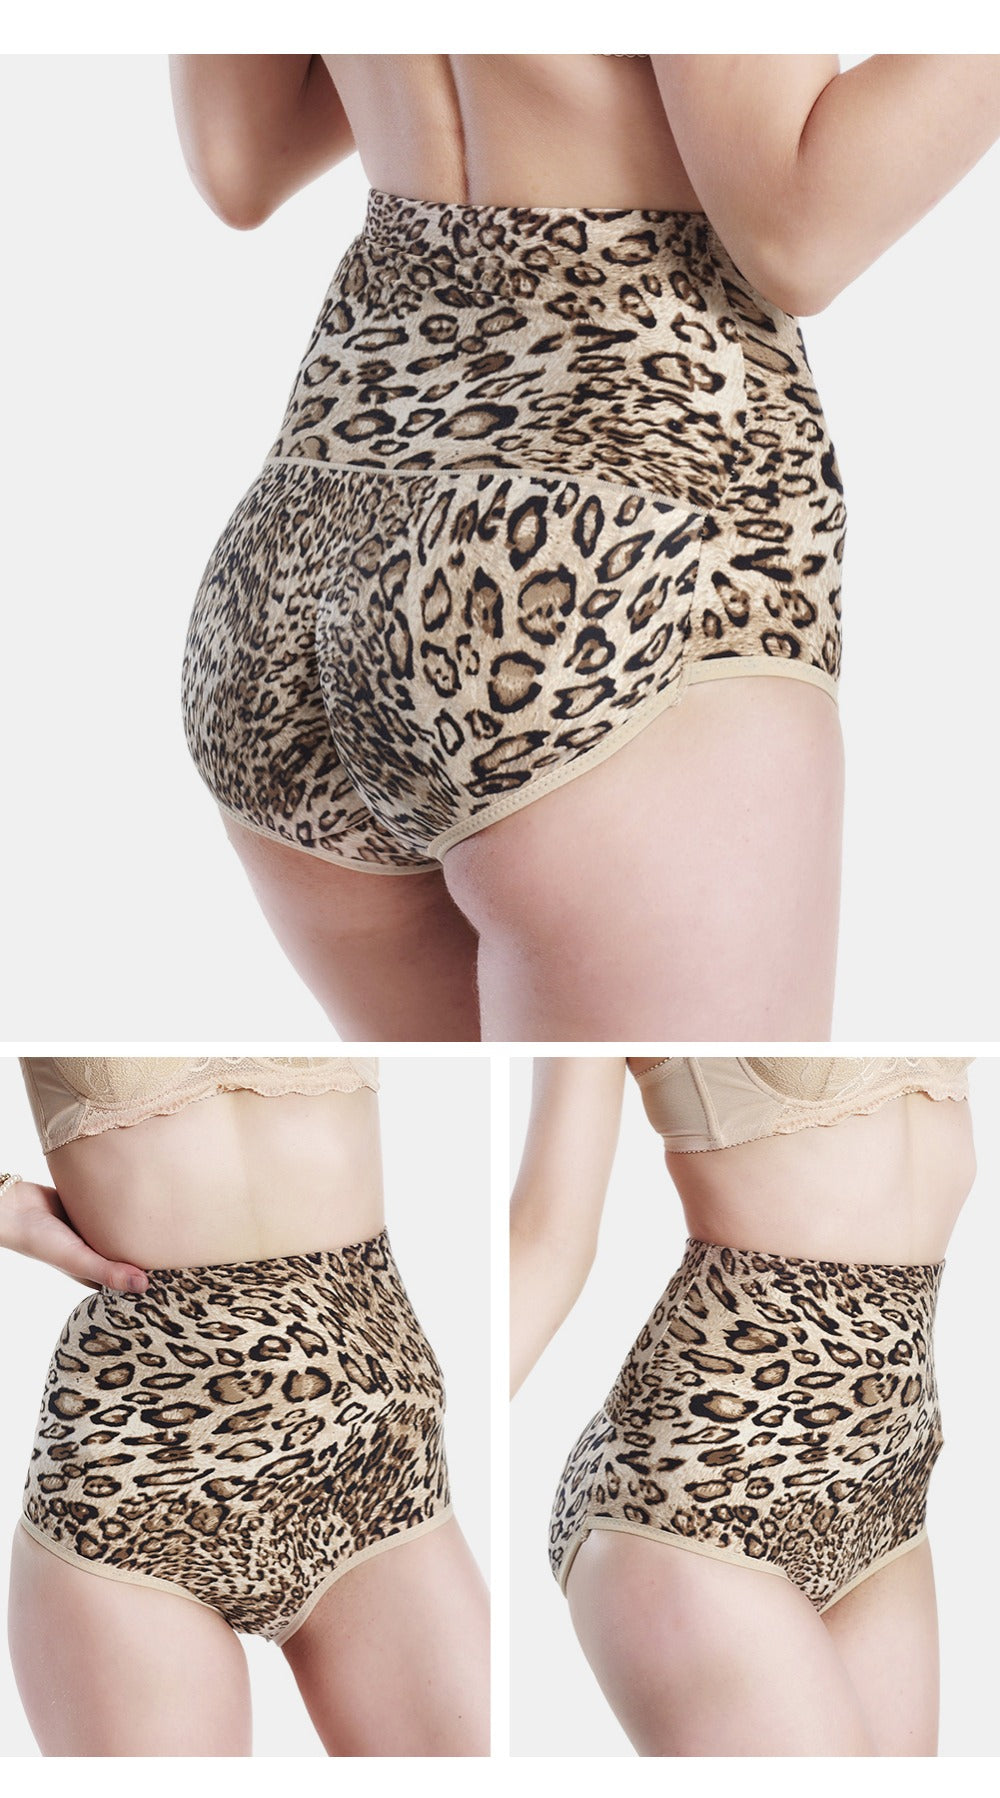 Body Shaper Leopard Print Slimming Briefs Butt Lifter Hip Enhancer Hig